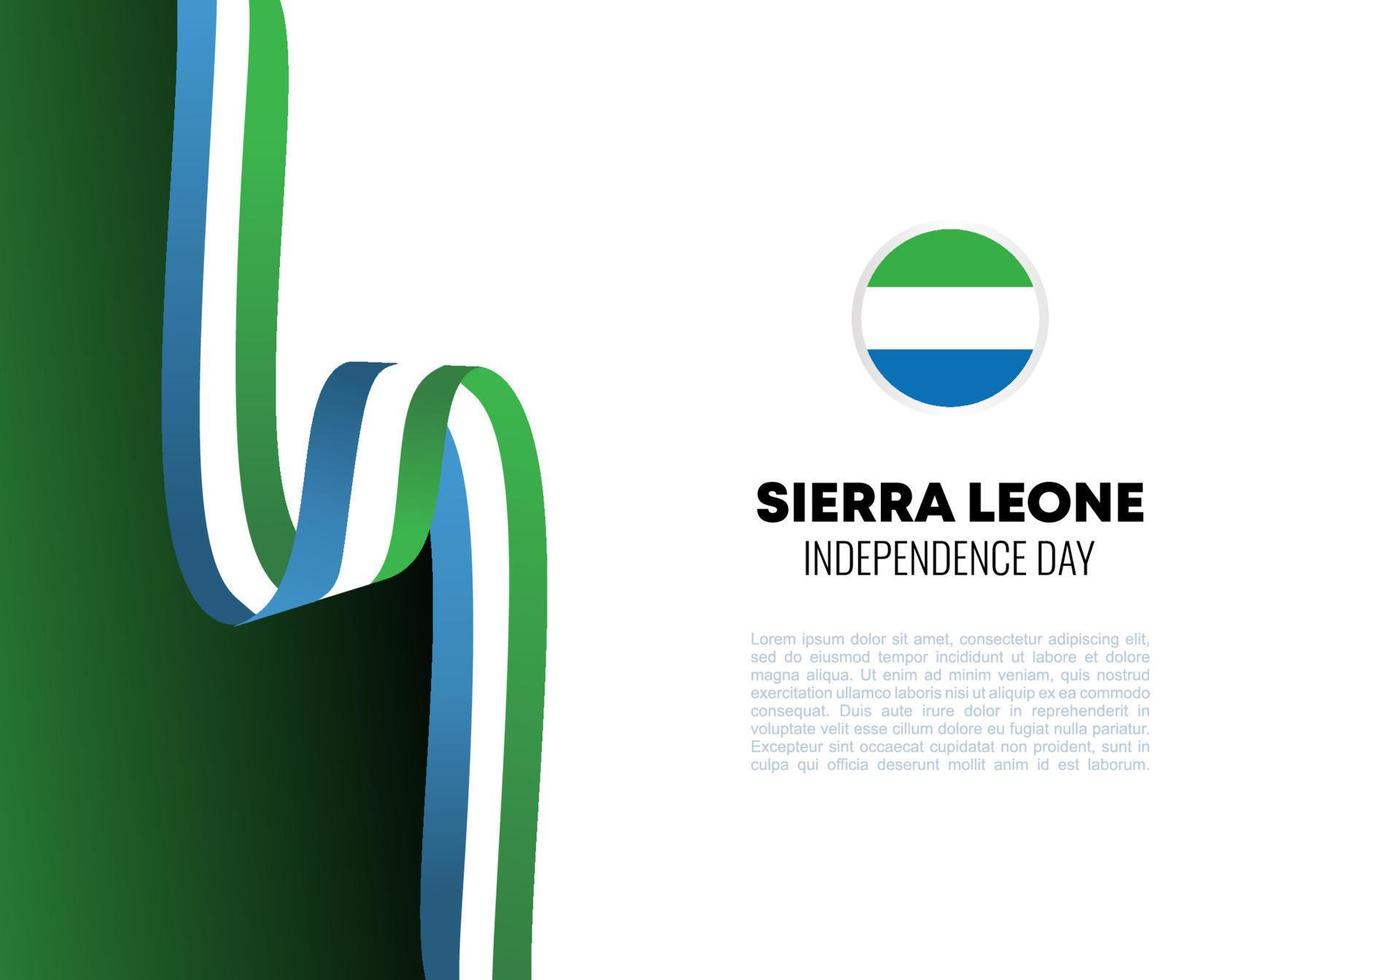 dia da independência de serra leoa para celebração nacional em 27 de abril. vetor